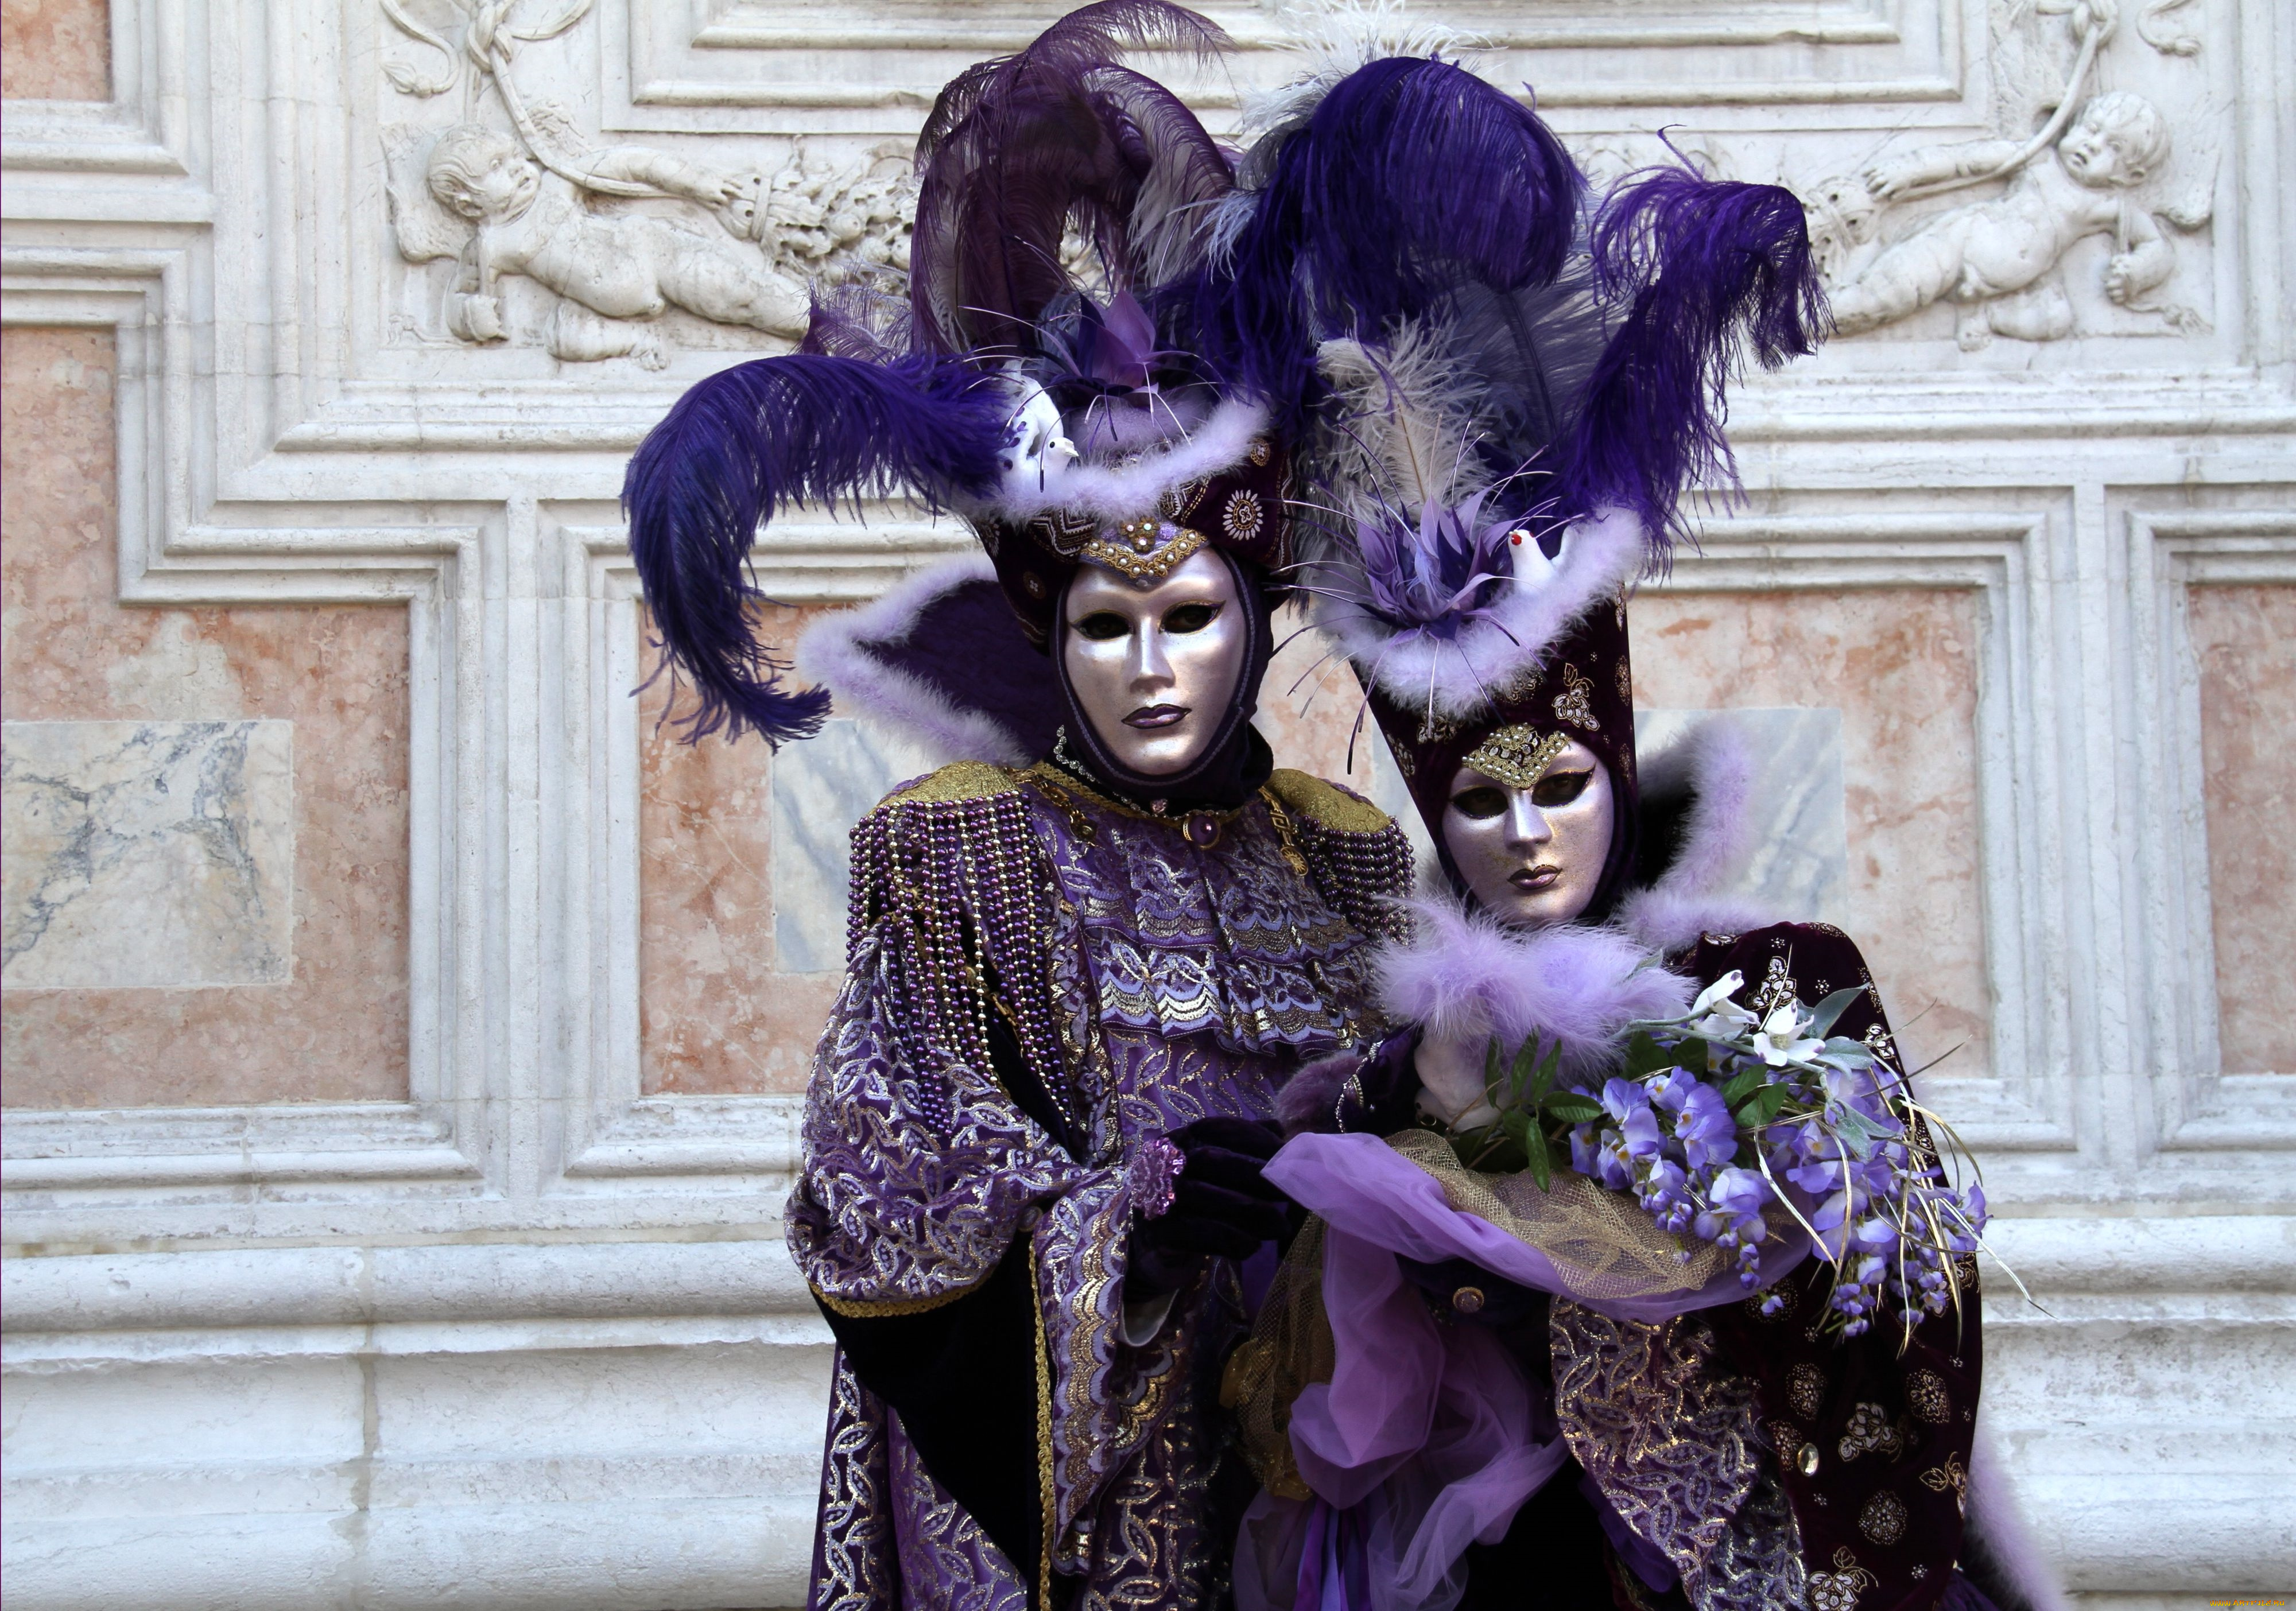 разное, маски, , карнавальные, костюмы, карнавал, венеция